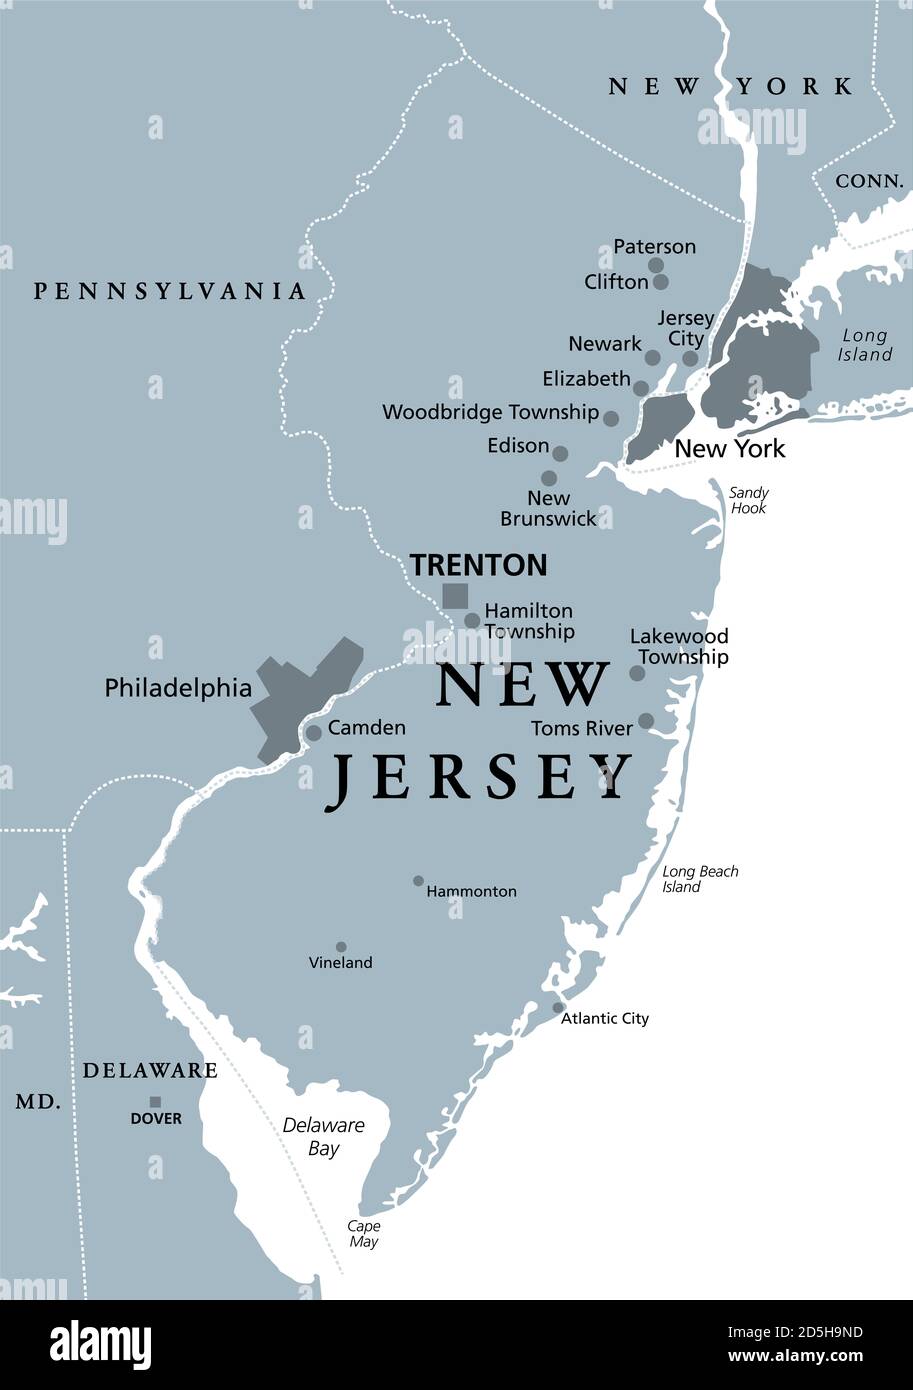 New Jersey, NJ, mappa politica grigia con la capitale Trenton. Stato nella regione del Medio Atlantico del Nord-Est degli Stati Uniti d'America. Foto Stock